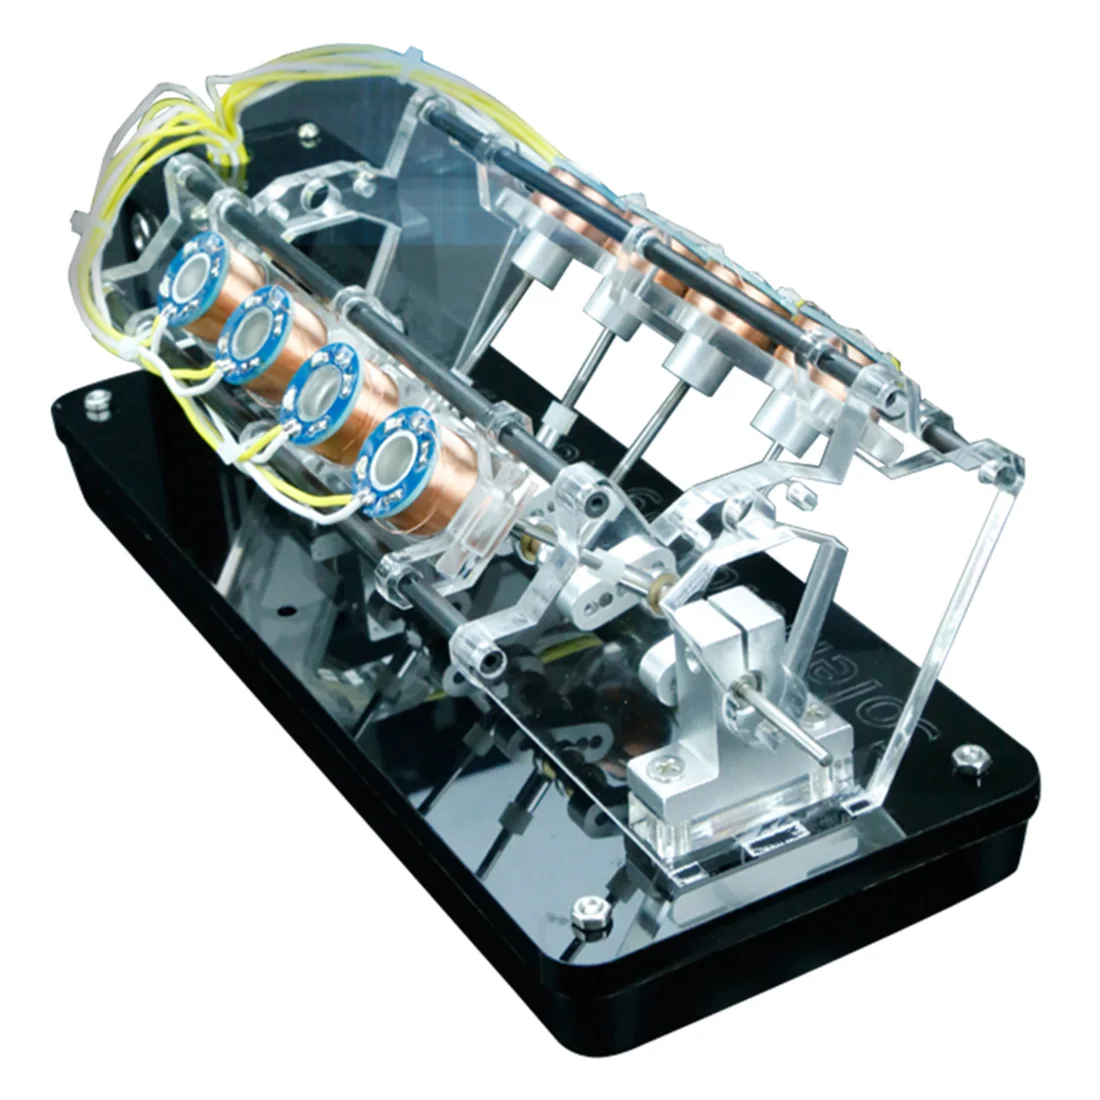 NFSTRIKE 5 в 4 Вт 8 катушек высокоскоростной Электромагнит автомобильный двигатель v-образная Модель двигателя развивающие игрушки для детей и взрослых - Цвет: 8 Coil